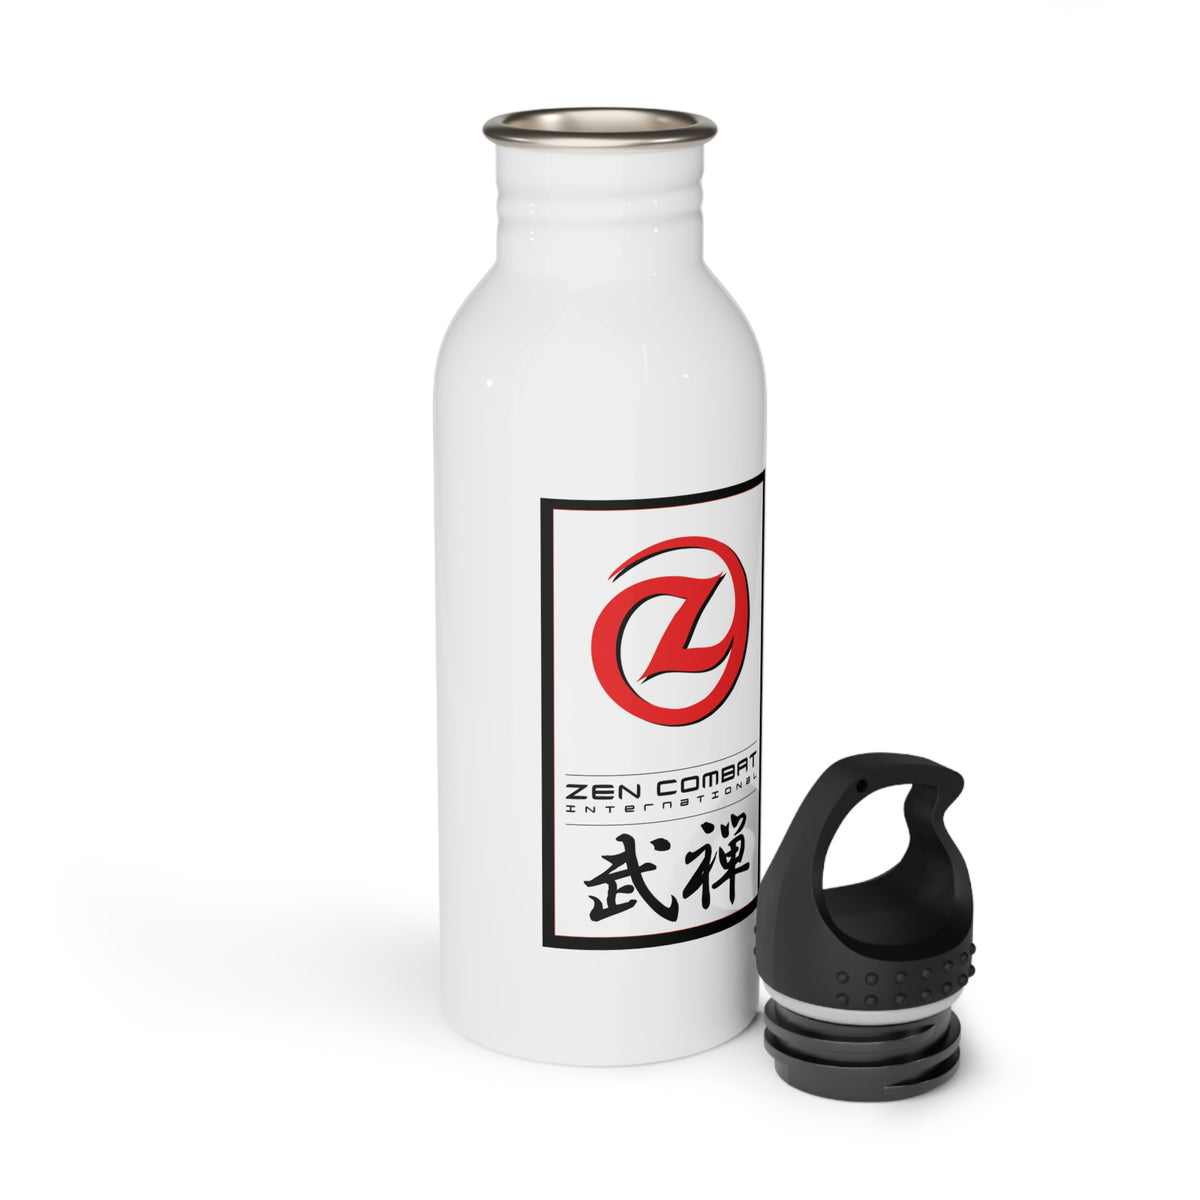 Zen Combat Stainless Steel Water Bottle 20oz